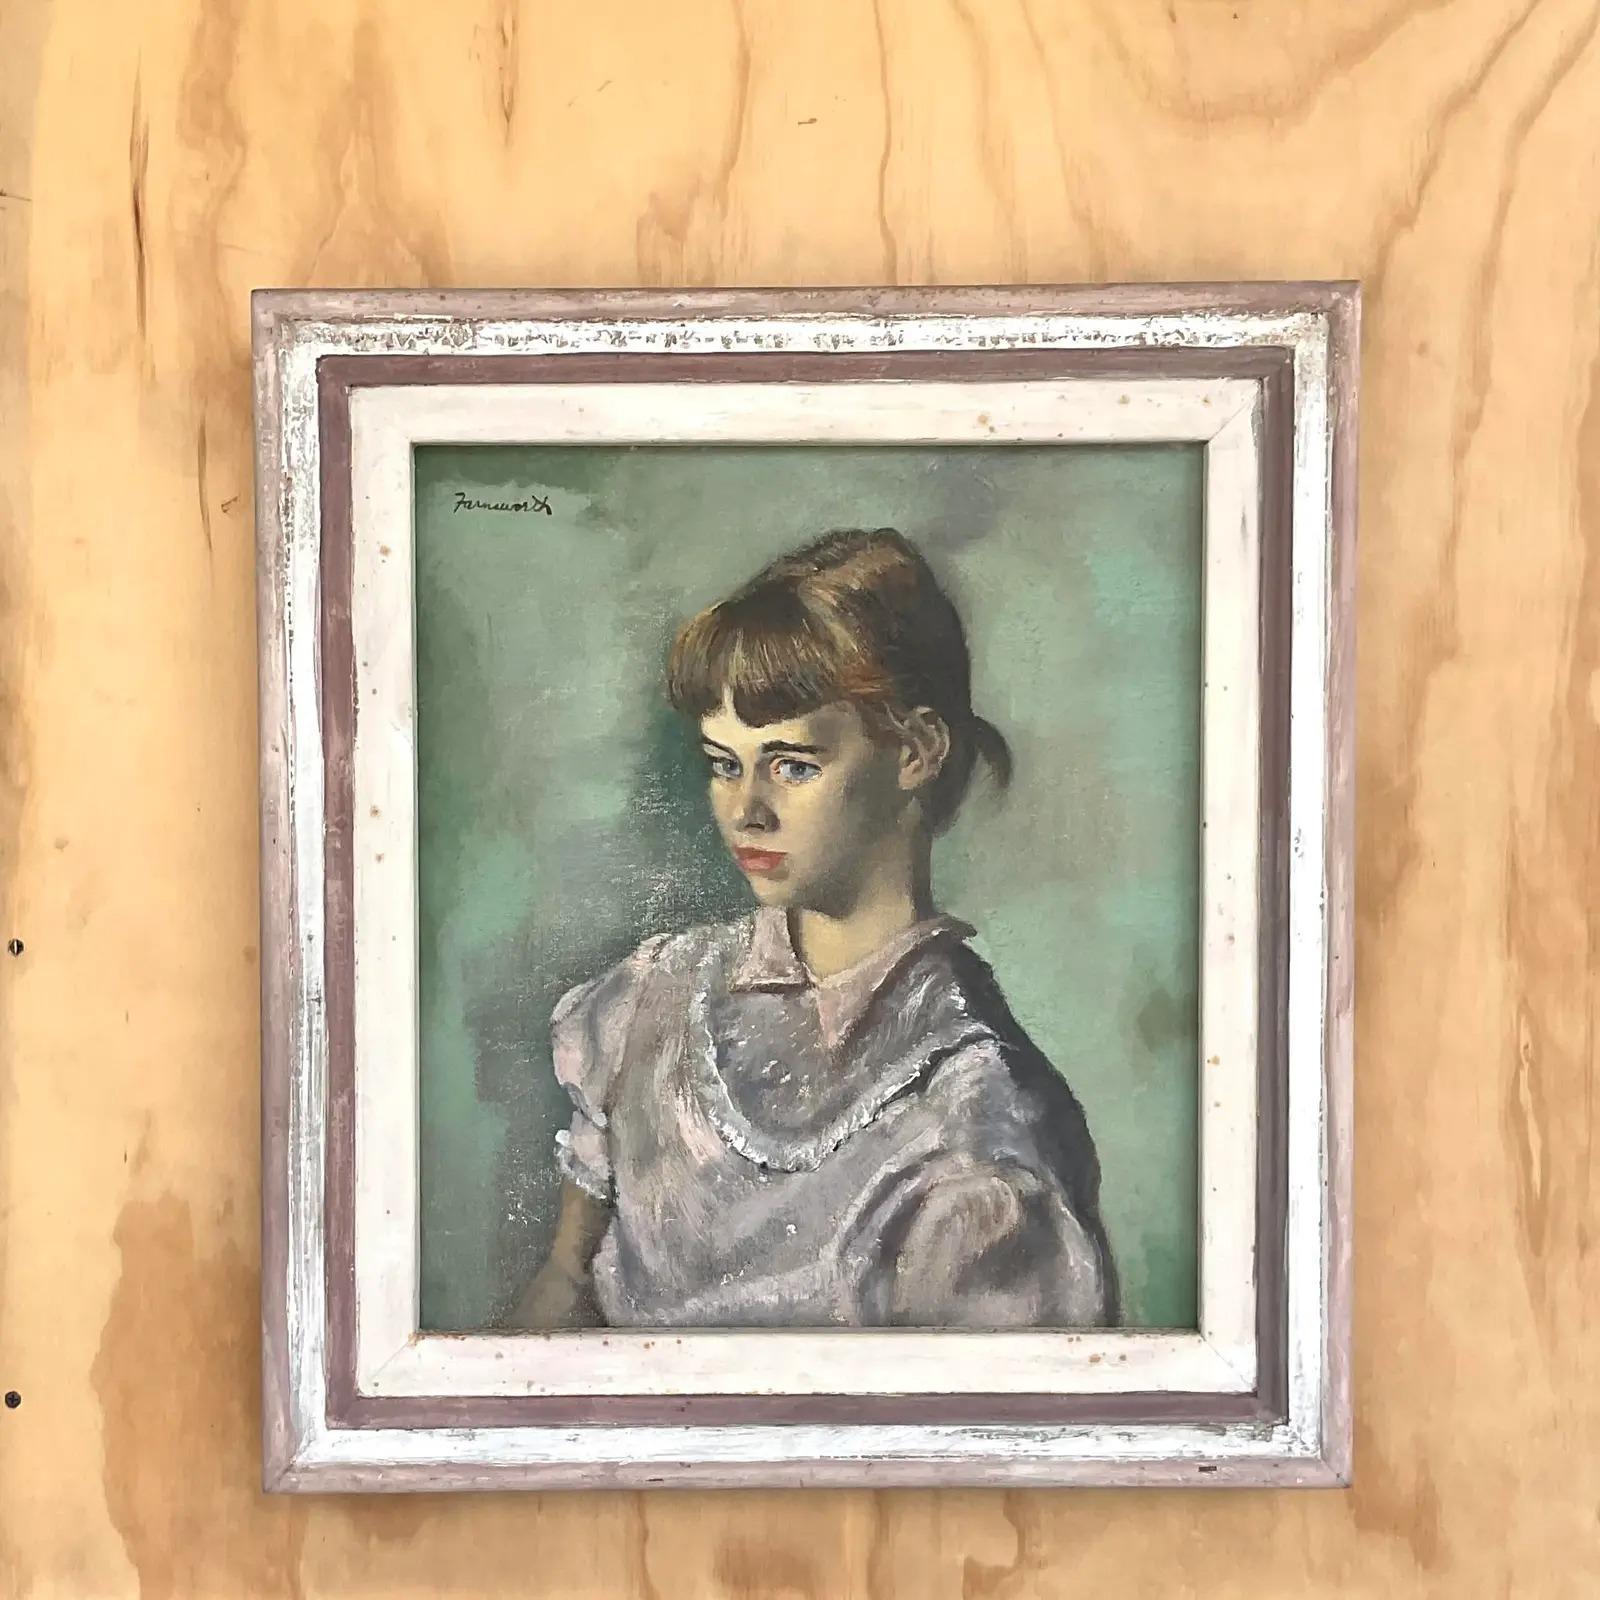 Magnifique portrait à l'huile original vintage. Une belle composition d'une jeune fille. Signé par l'artiste Farnsworth. Acquis d'une succession en Floride.